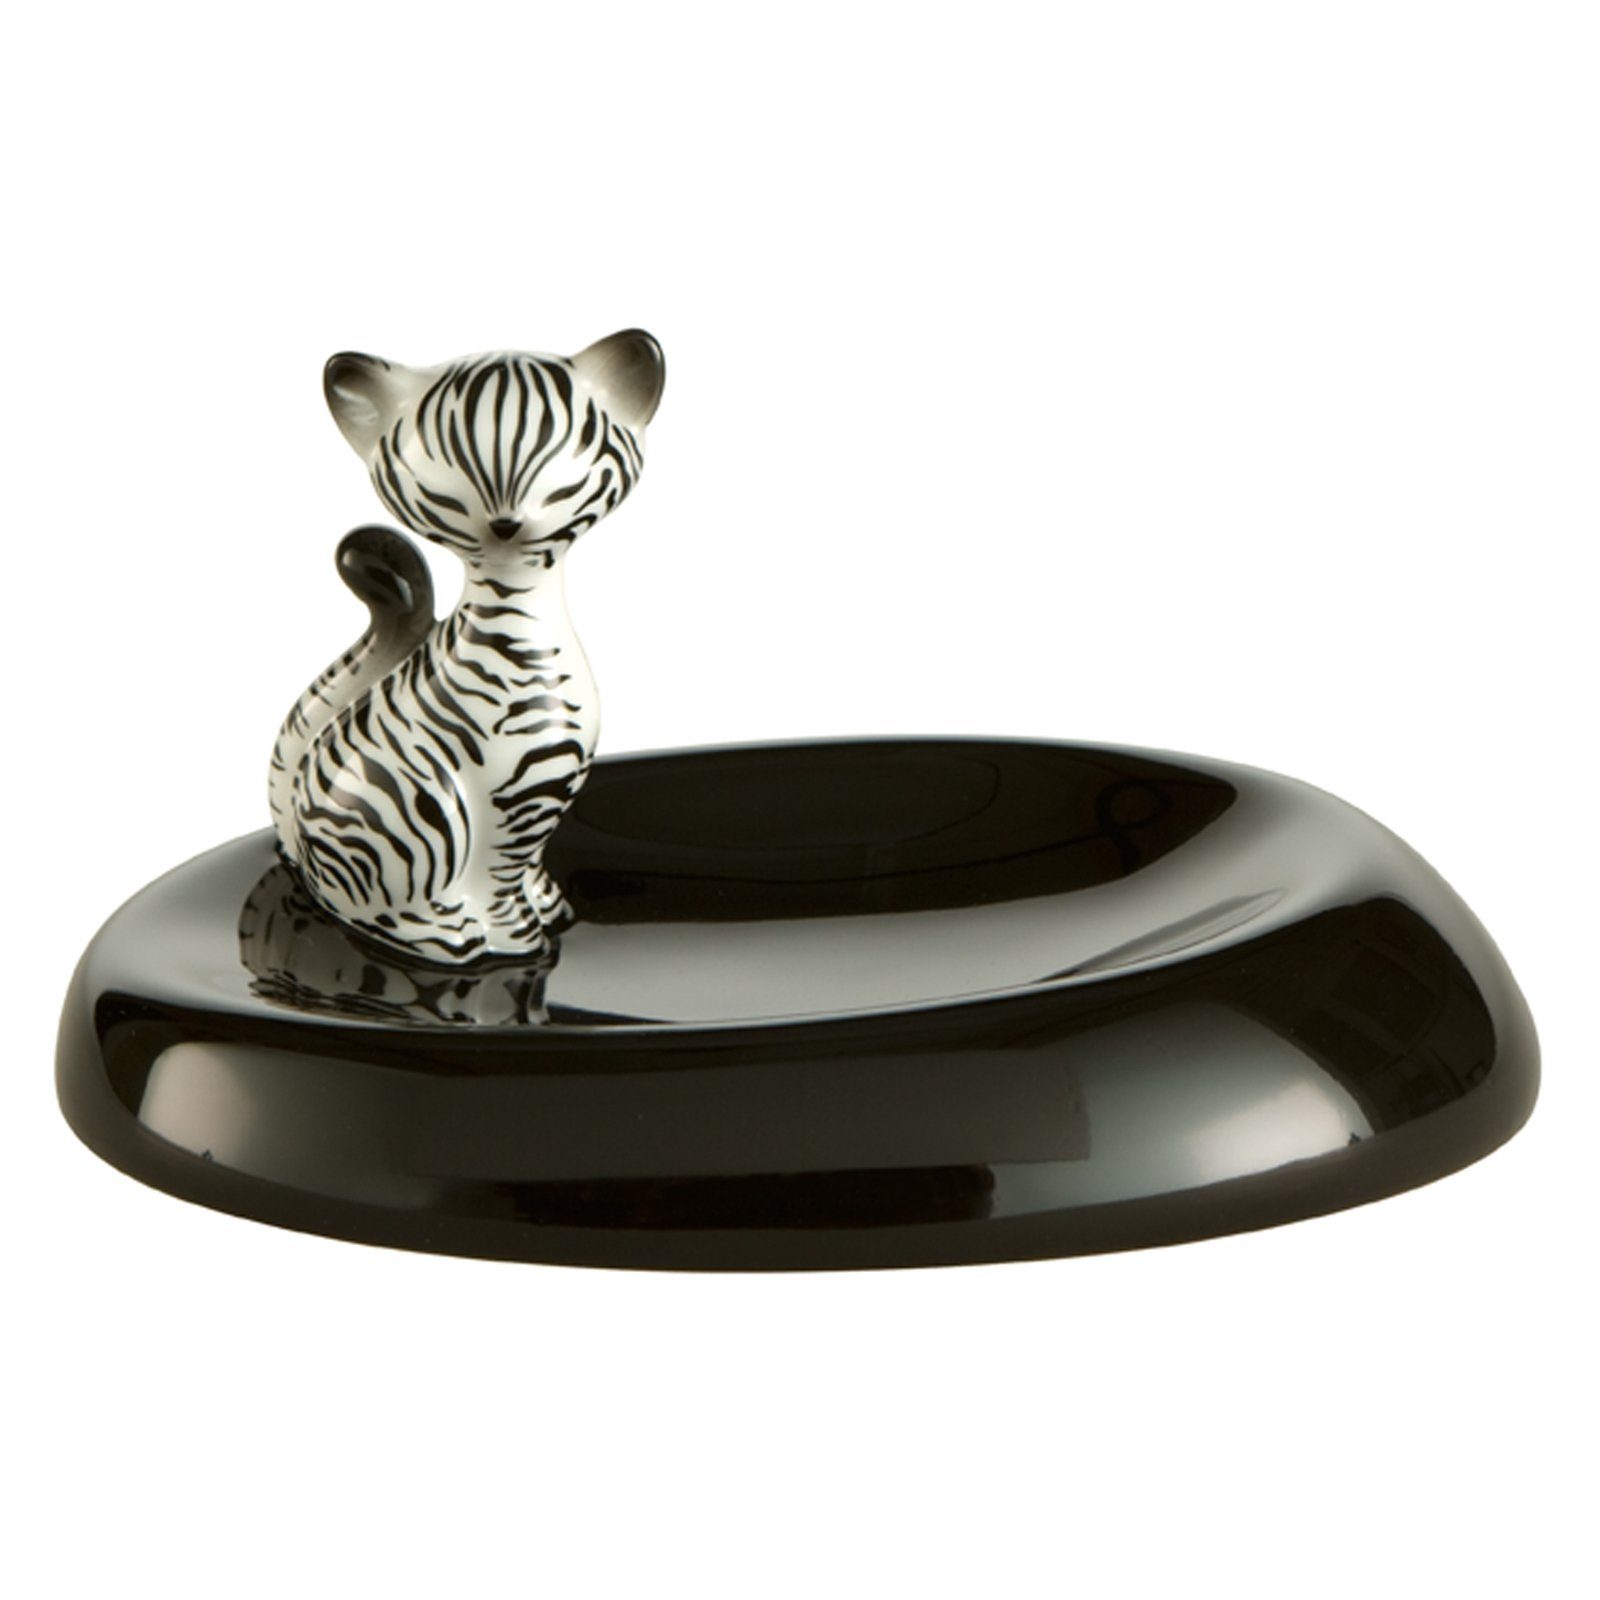 Goebel Dekoschale Zebra Kitty - Schale Kitty de luxe, In Geschenkverpackung